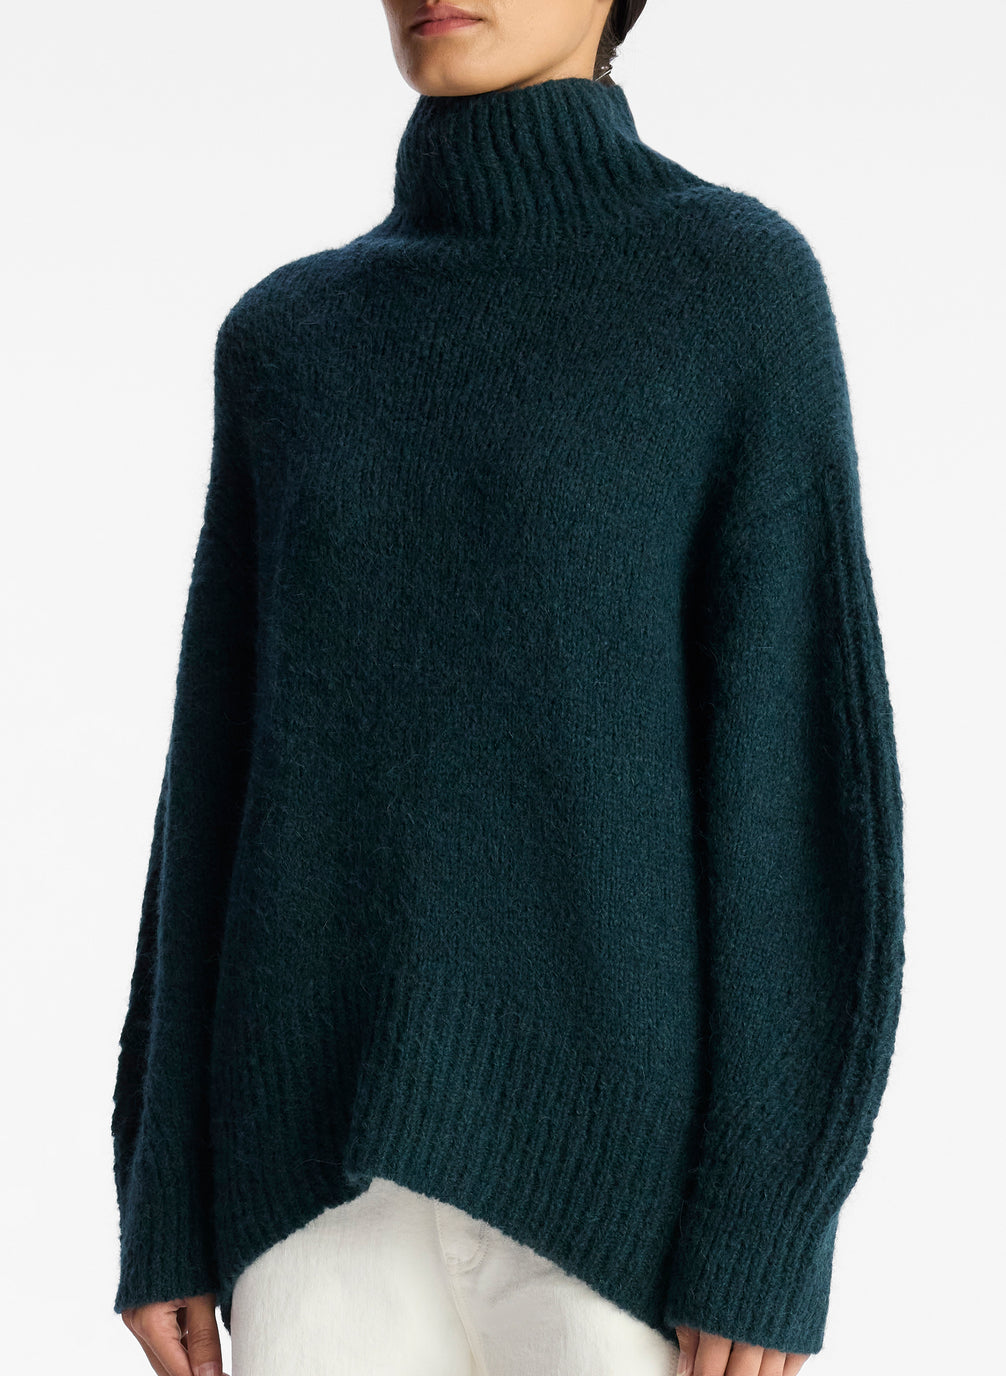 Nelson Wool Turtleneck Sweater